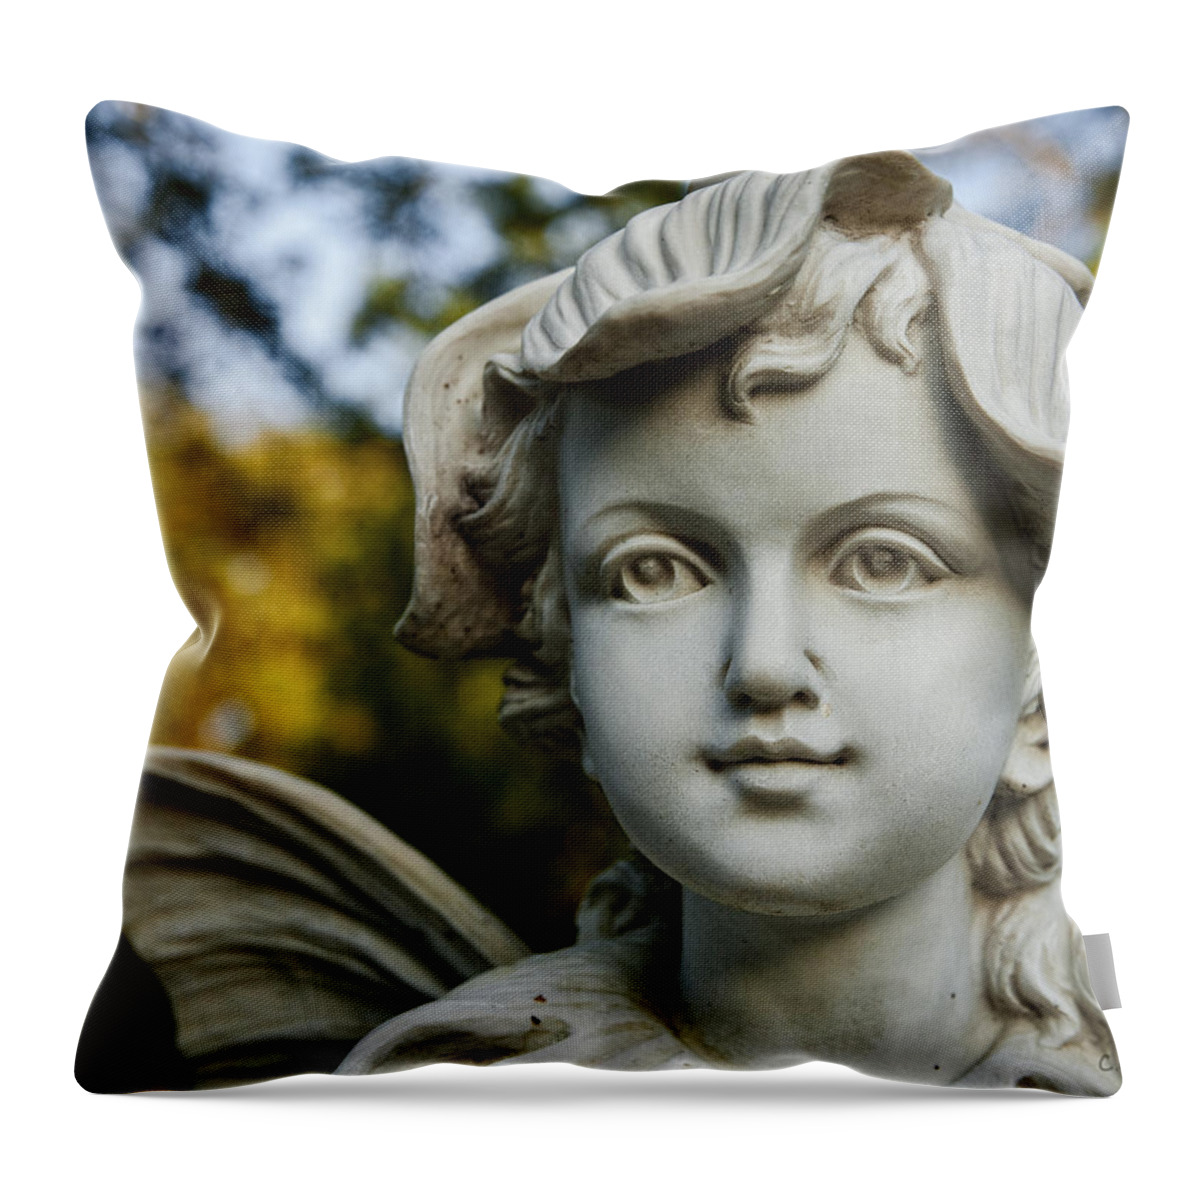 Garden Throw Pillow featuring the photograph Garden Fairy by Christopher Holmes